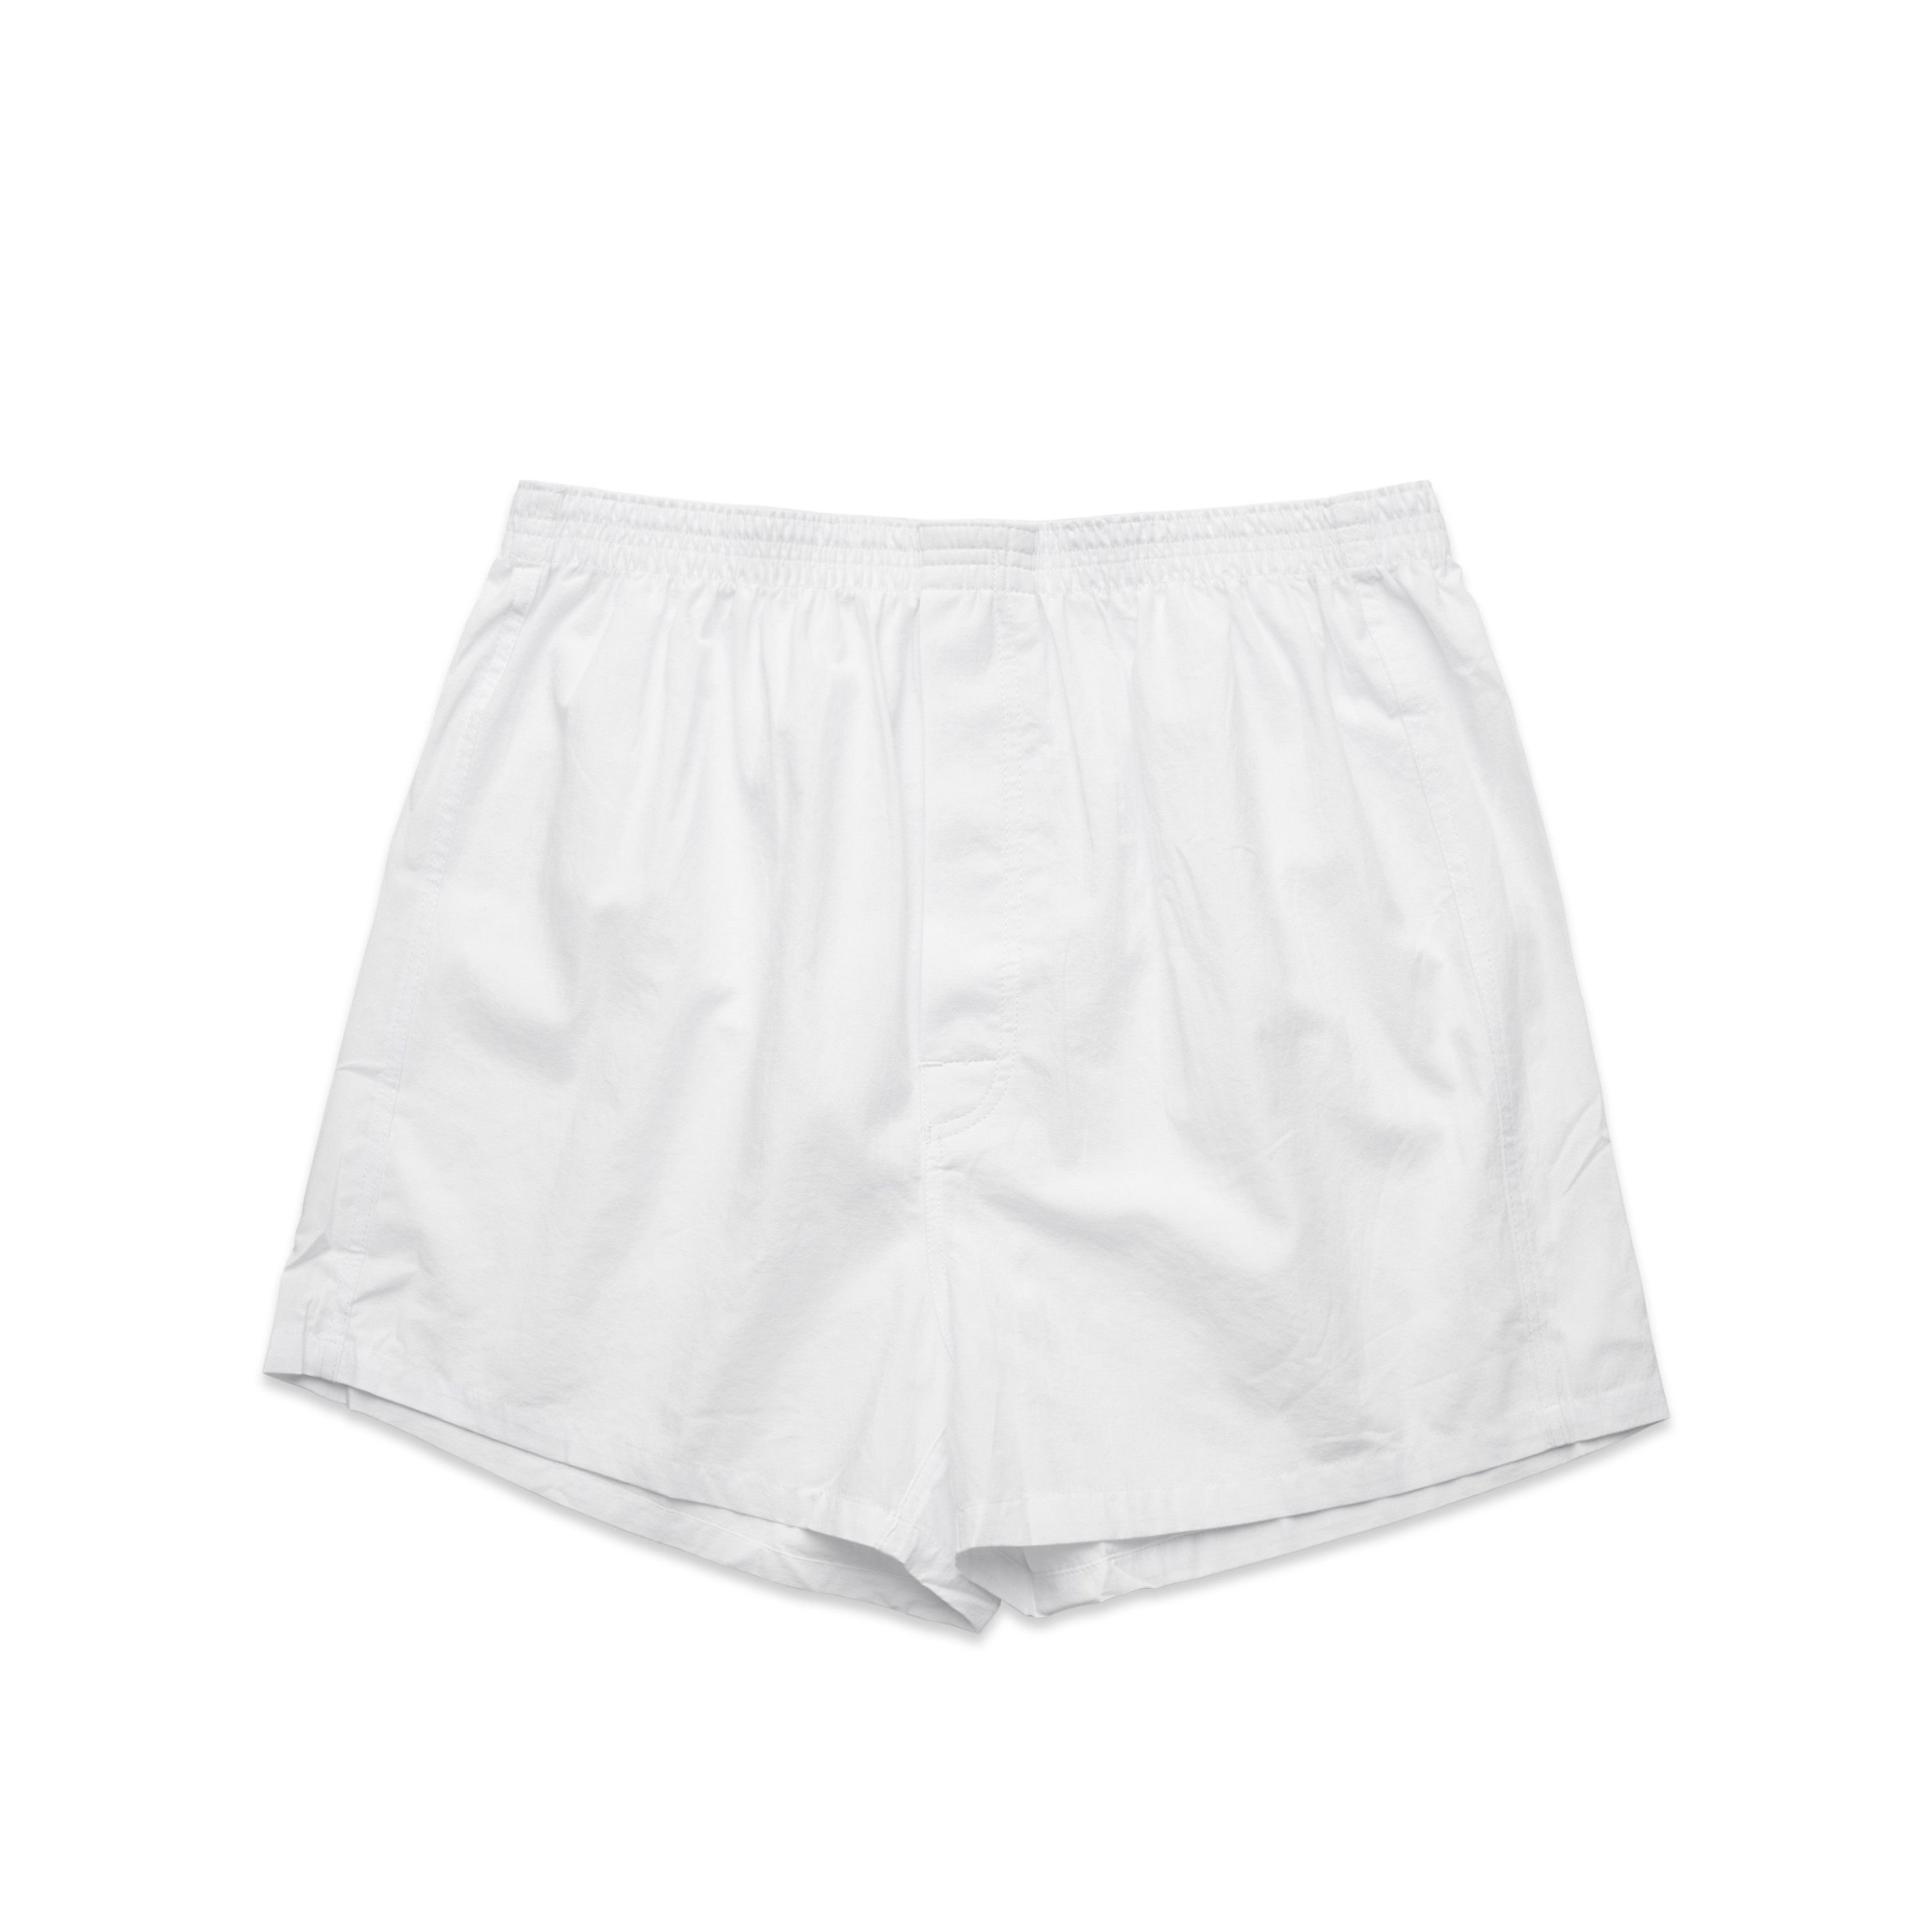 Mens Boxer Shorts - 1202 - AS Colour AU